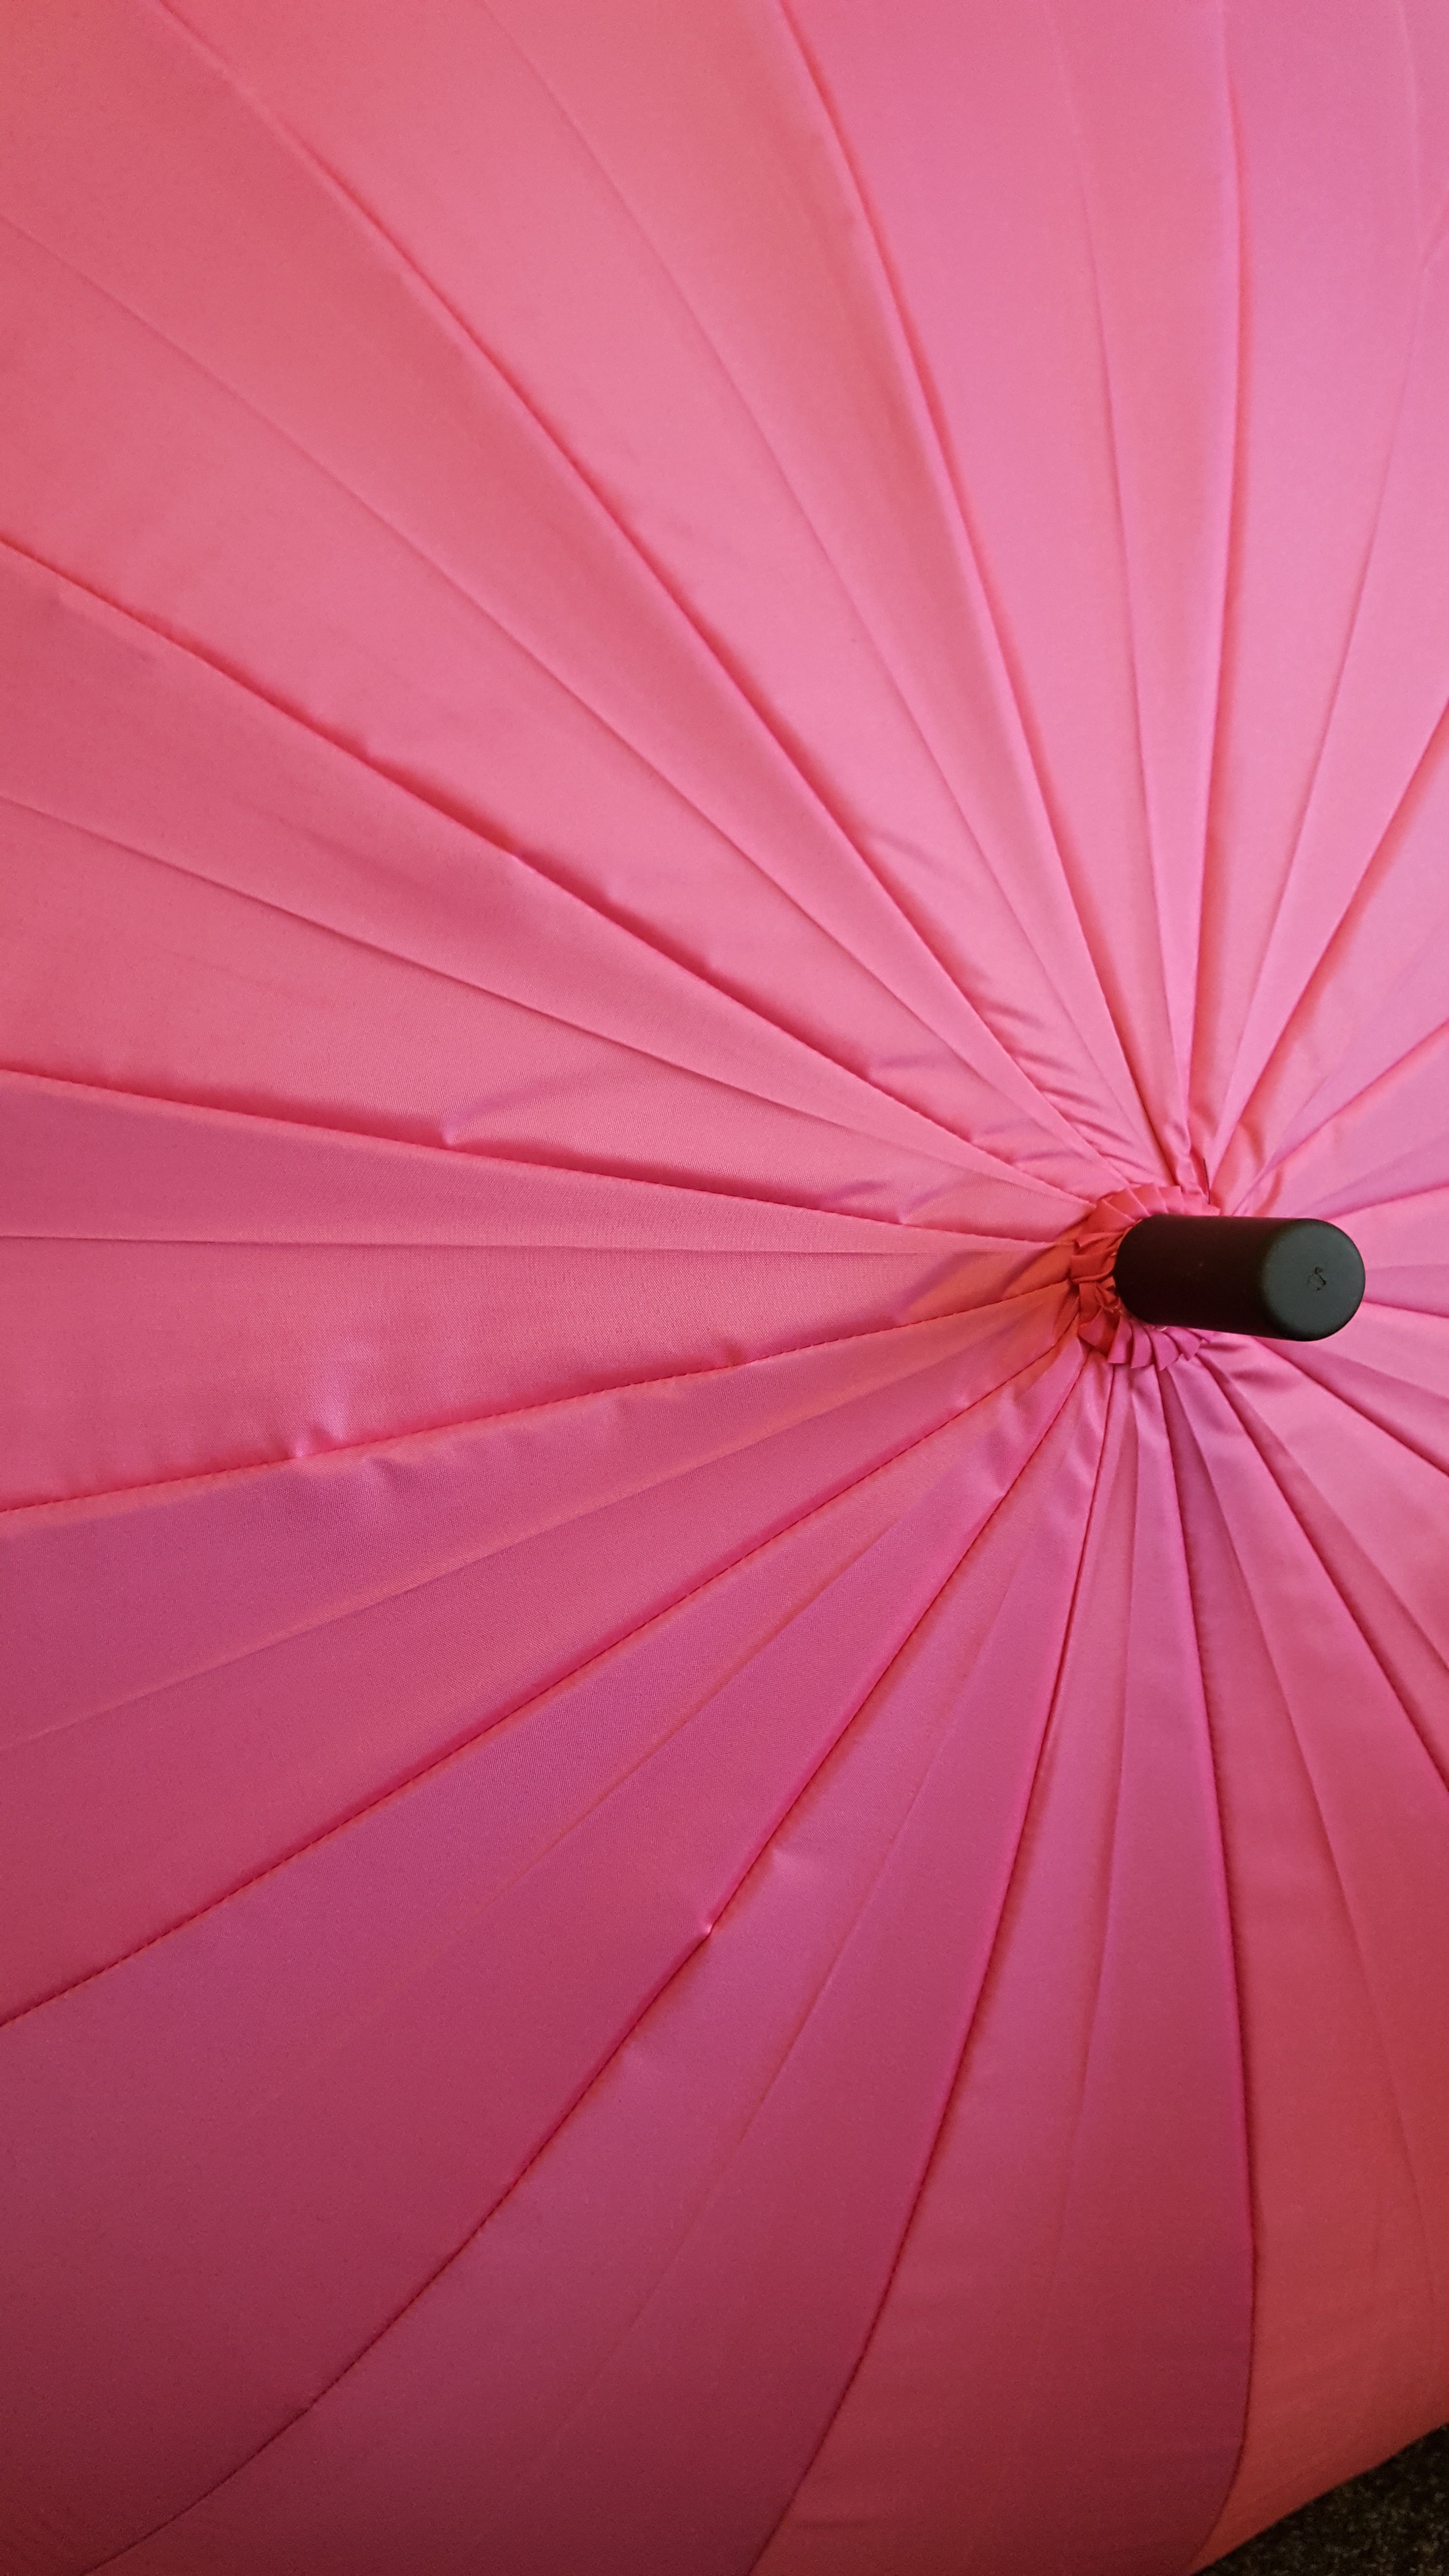 Anglic pretty♥ピンク♥フリル♥可愛♥うさぎちゃん♥日傘♥雨兼用